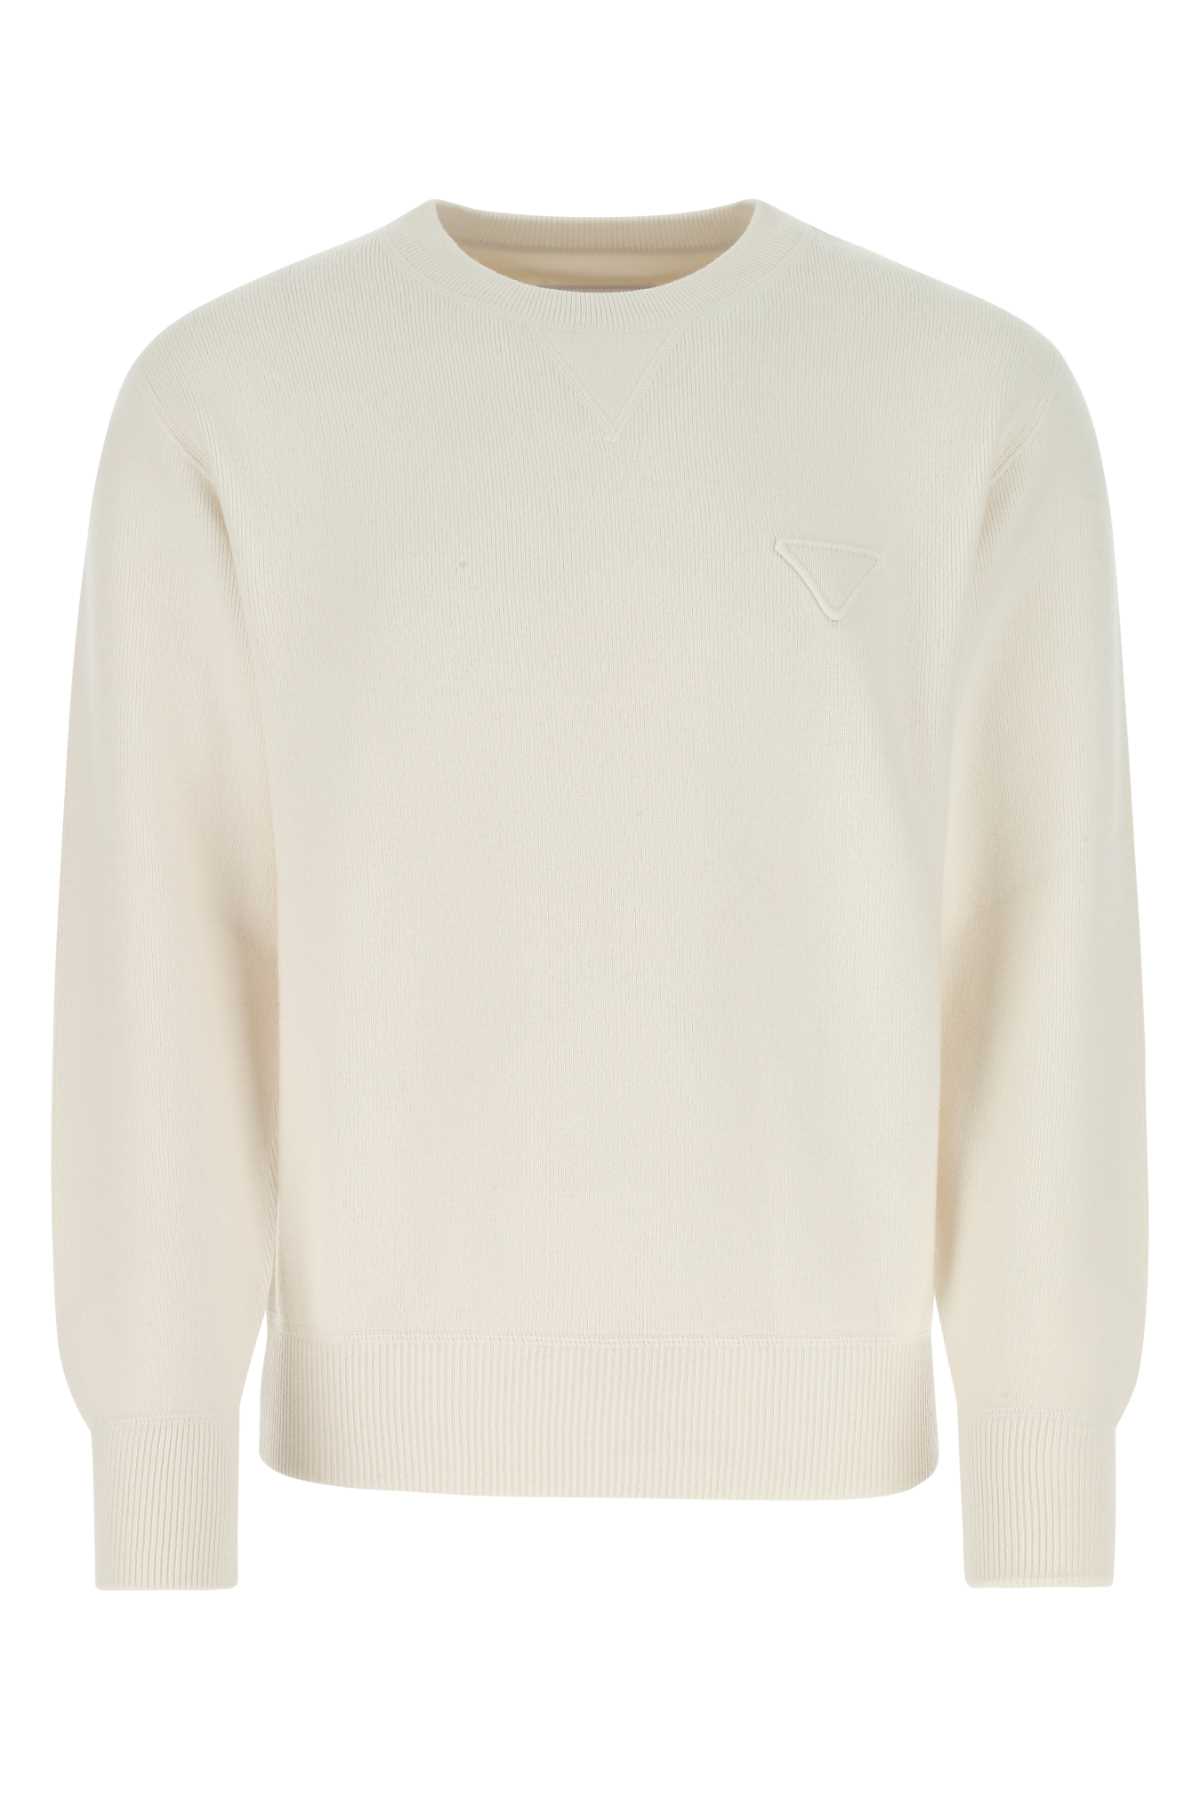 Shop Prada Ivory Stretch Cashmere Blend Sweater In F0009